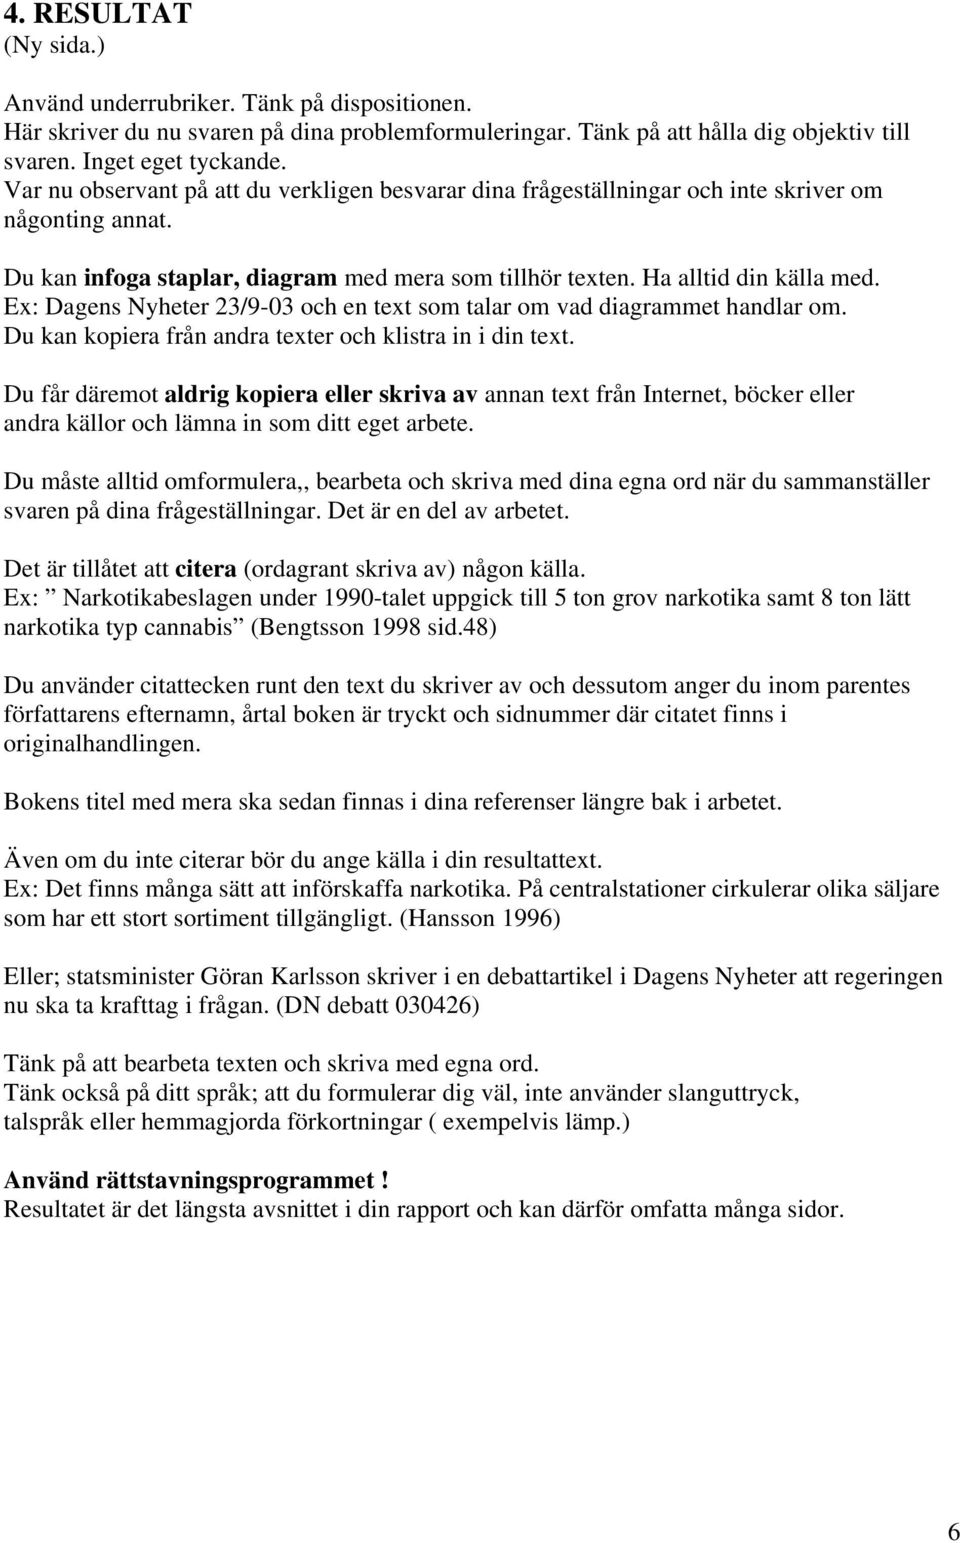 Ex: Dagens Nyheter 23/9-03 och en text som talar om vad diagrammet handlar om. Du kan kopiera från andra texter och klistra in i din text.